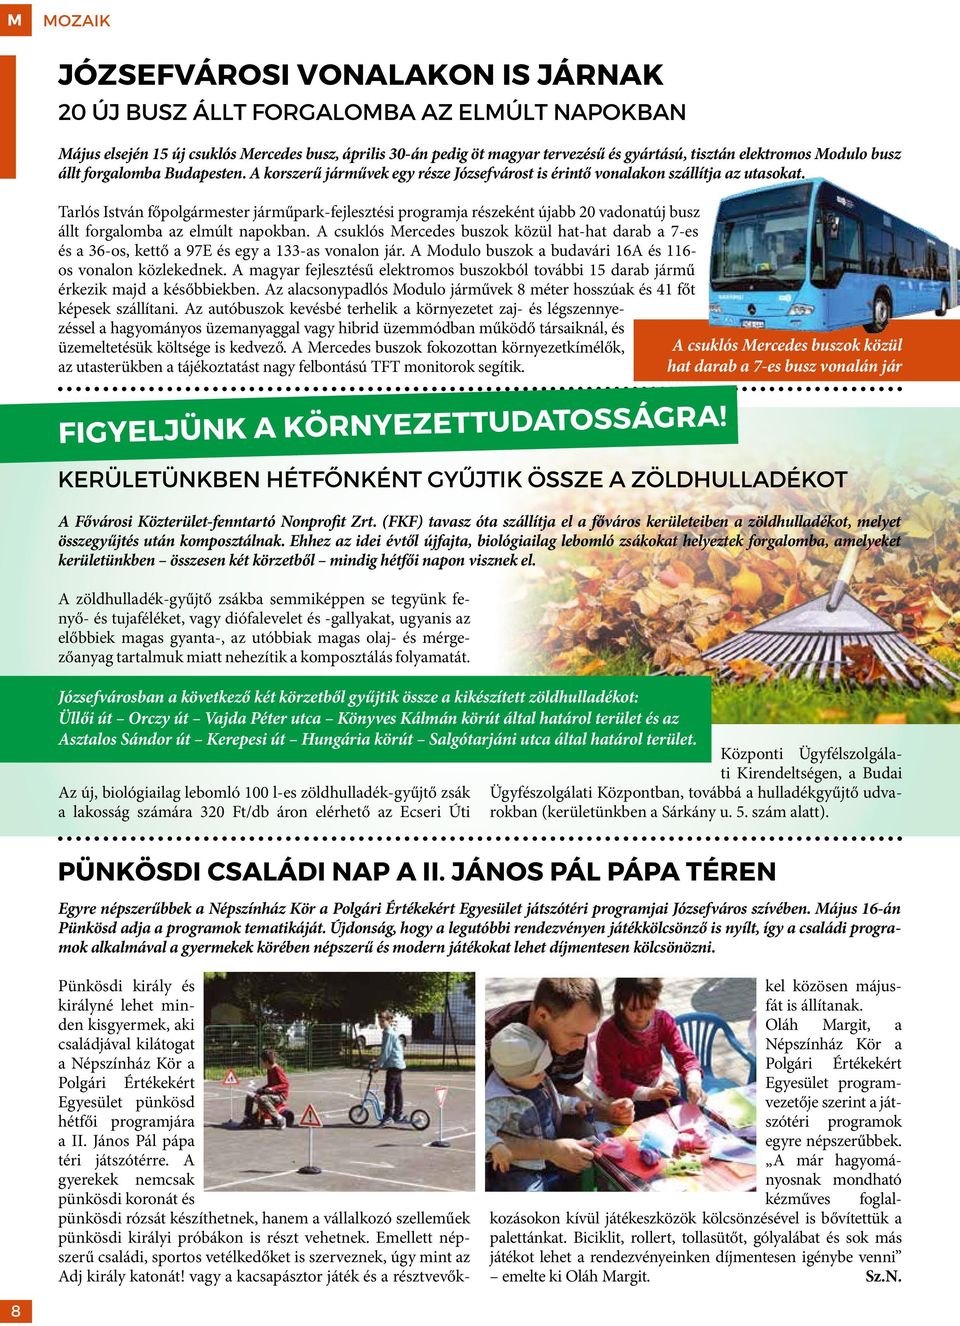 Tarlós István főpolgármester járműpark-fejlesztési programja részeként újabb 20 vadonatúj busz állt forgalomba az elmúlt napokban.